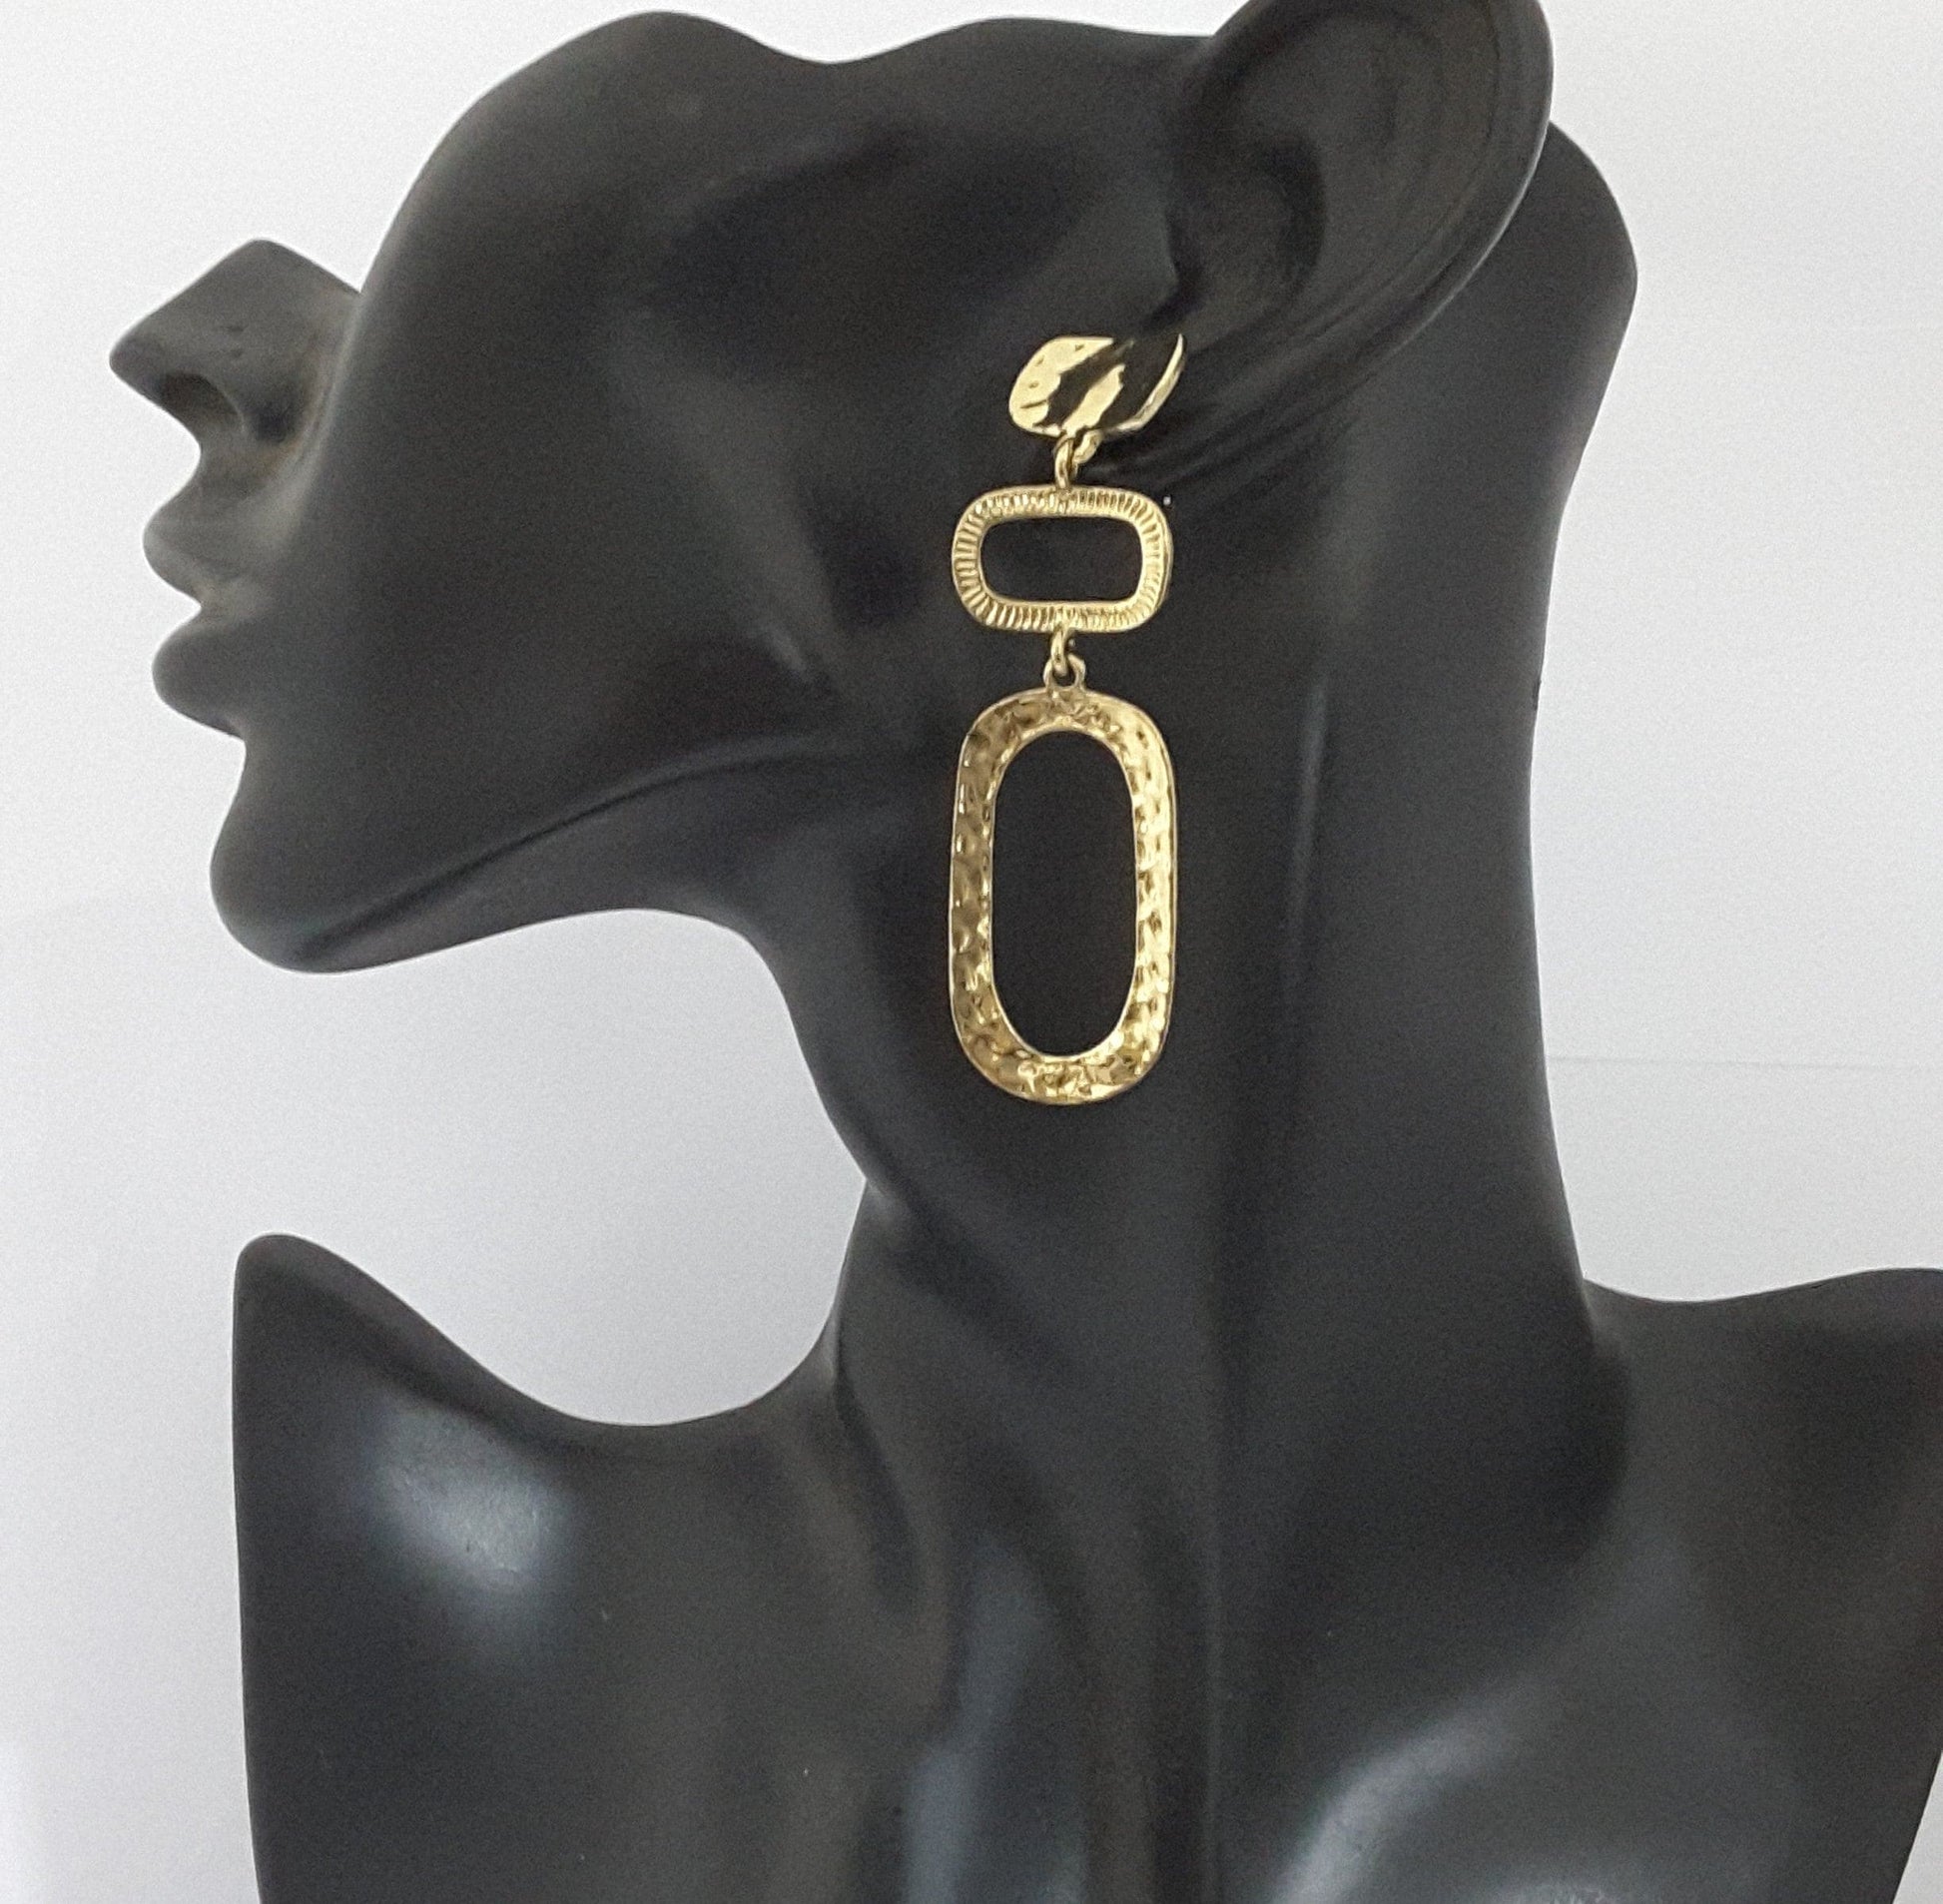 Moonstruck Textured Gold/Golden Dangle Earrings for Women - www.MoonstruckINC.com